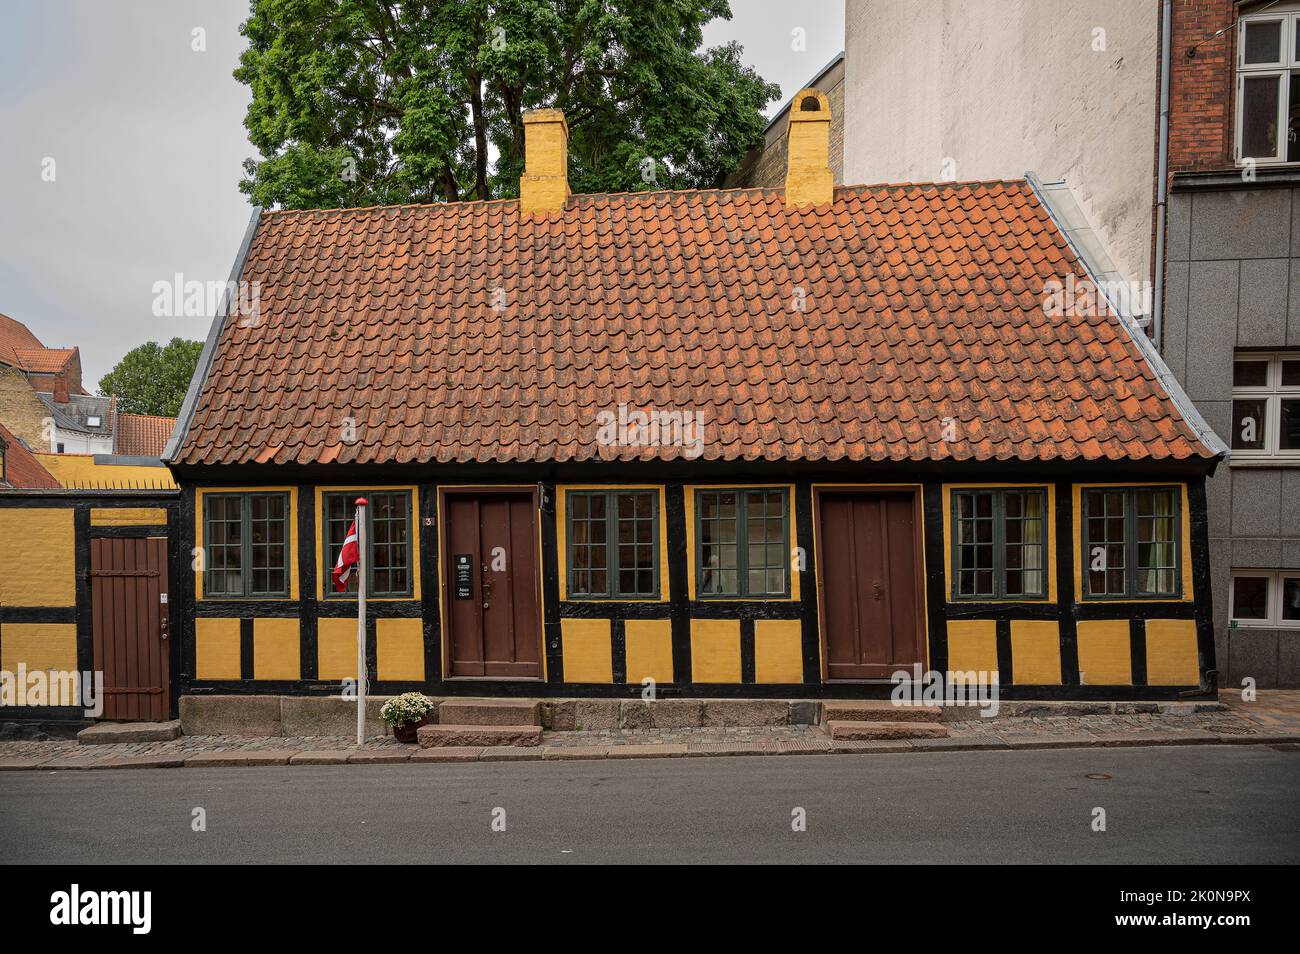 La maison d’enfance de H C Andersen est une maison à colombages située à Odense, au Danemark, au 27 août 2022 Banque D'Images